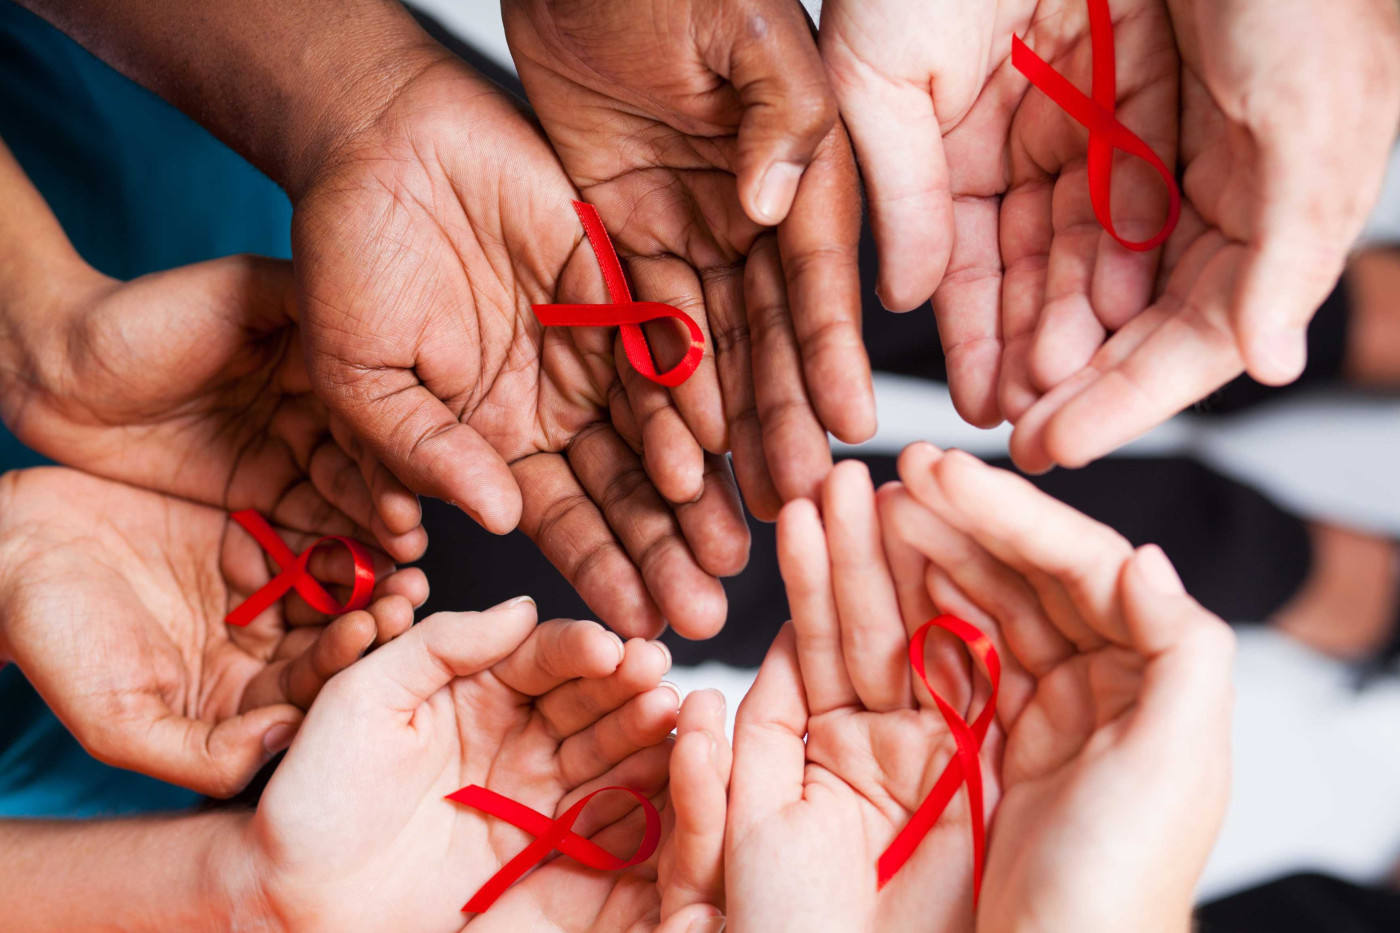  2.5 millones de personas siguen infectándose de VIH cada año